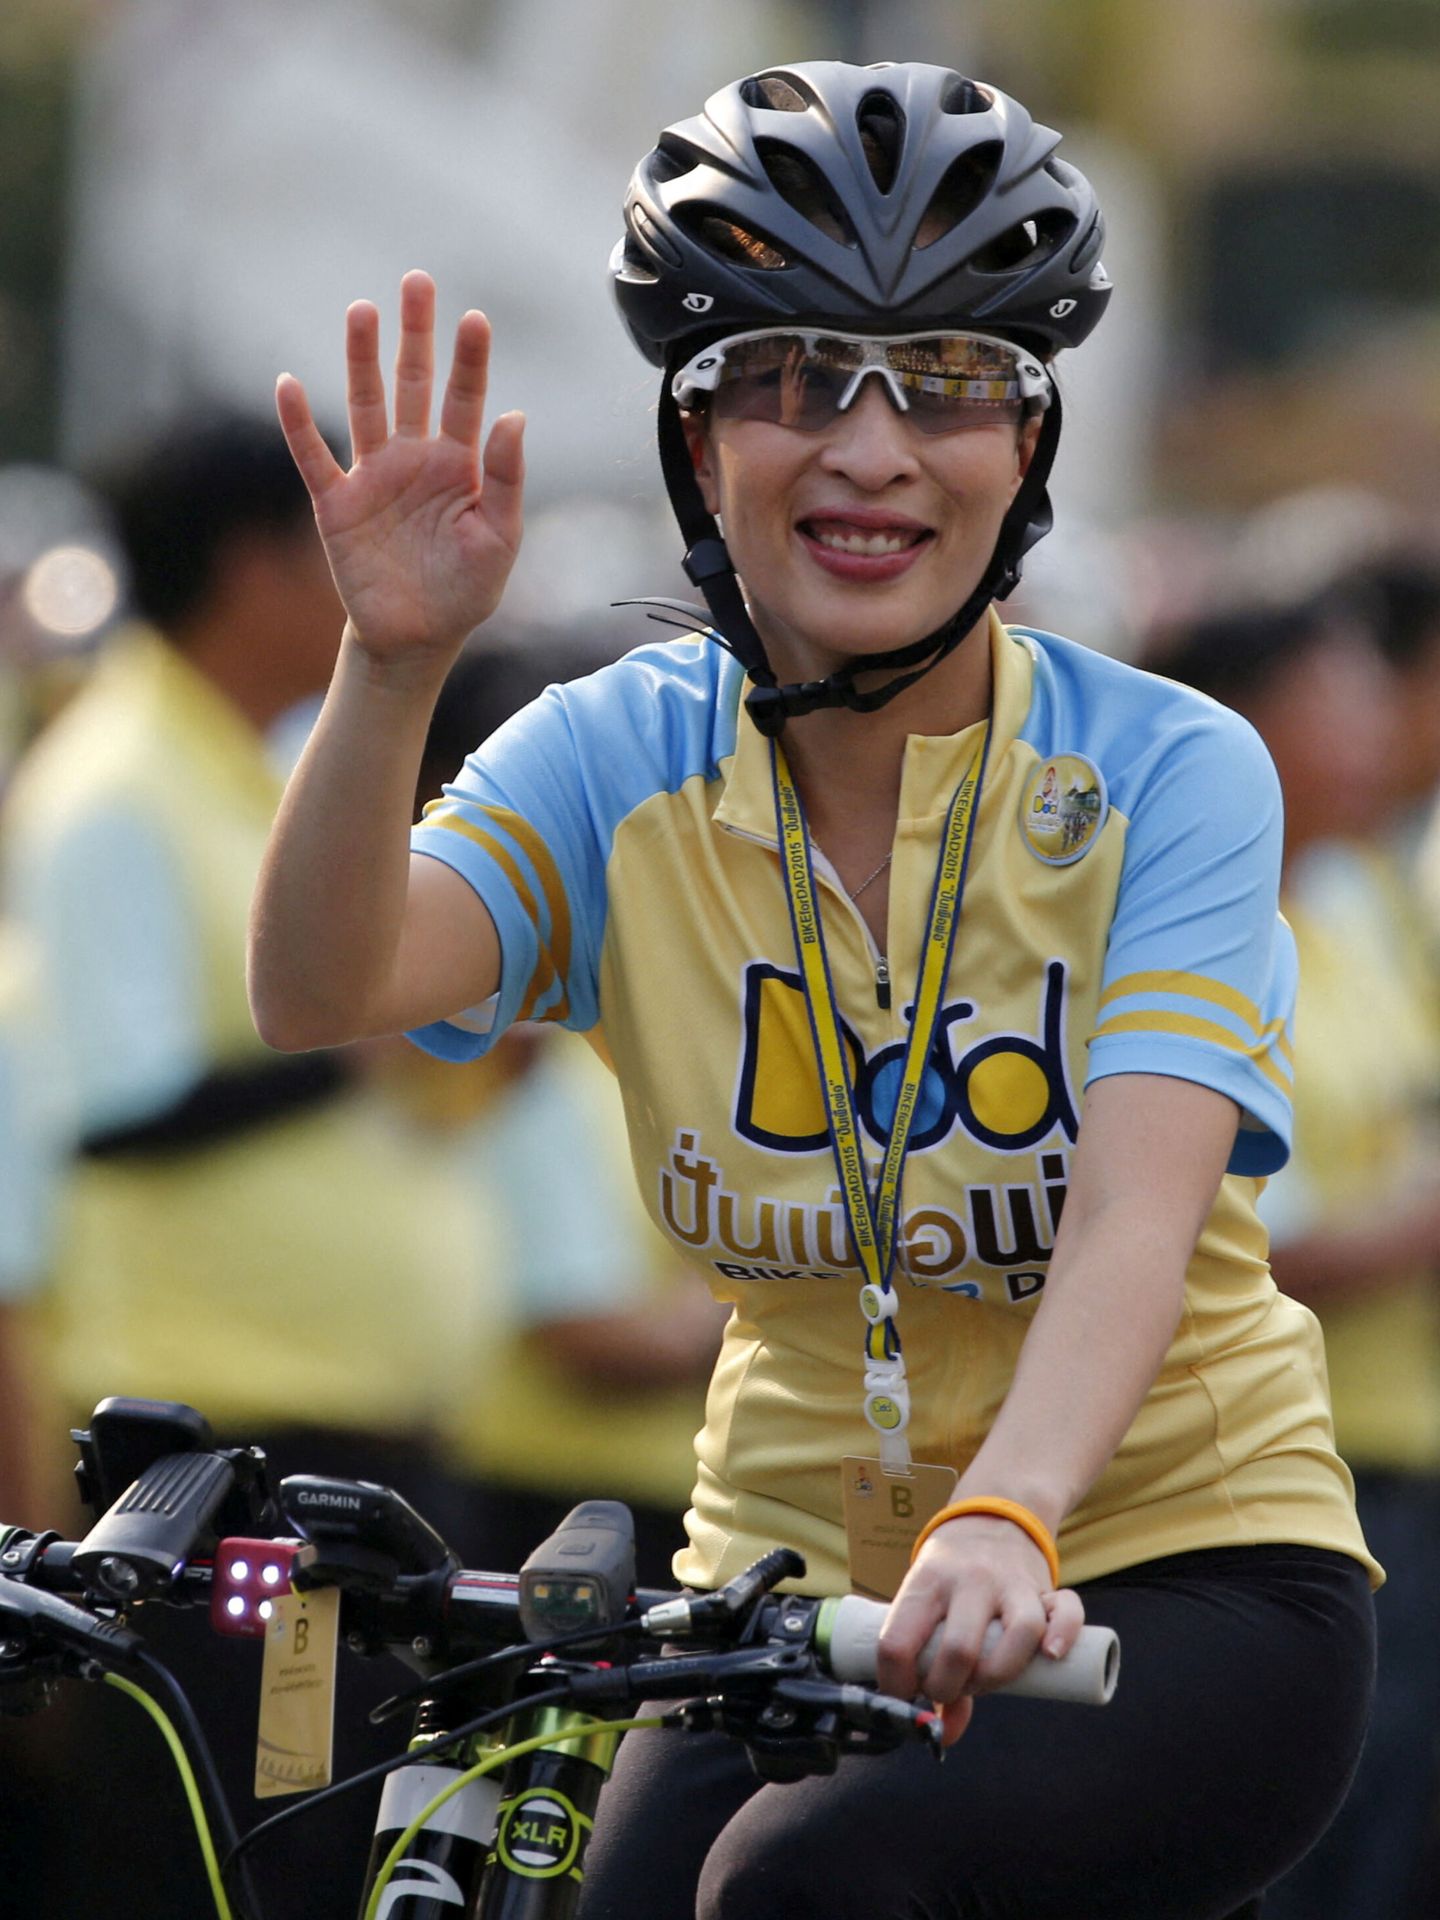 La princesa Bajrakitiyabha montando en bici en una imagen de archivo. (Reuters/Chaiwat Subprasom)